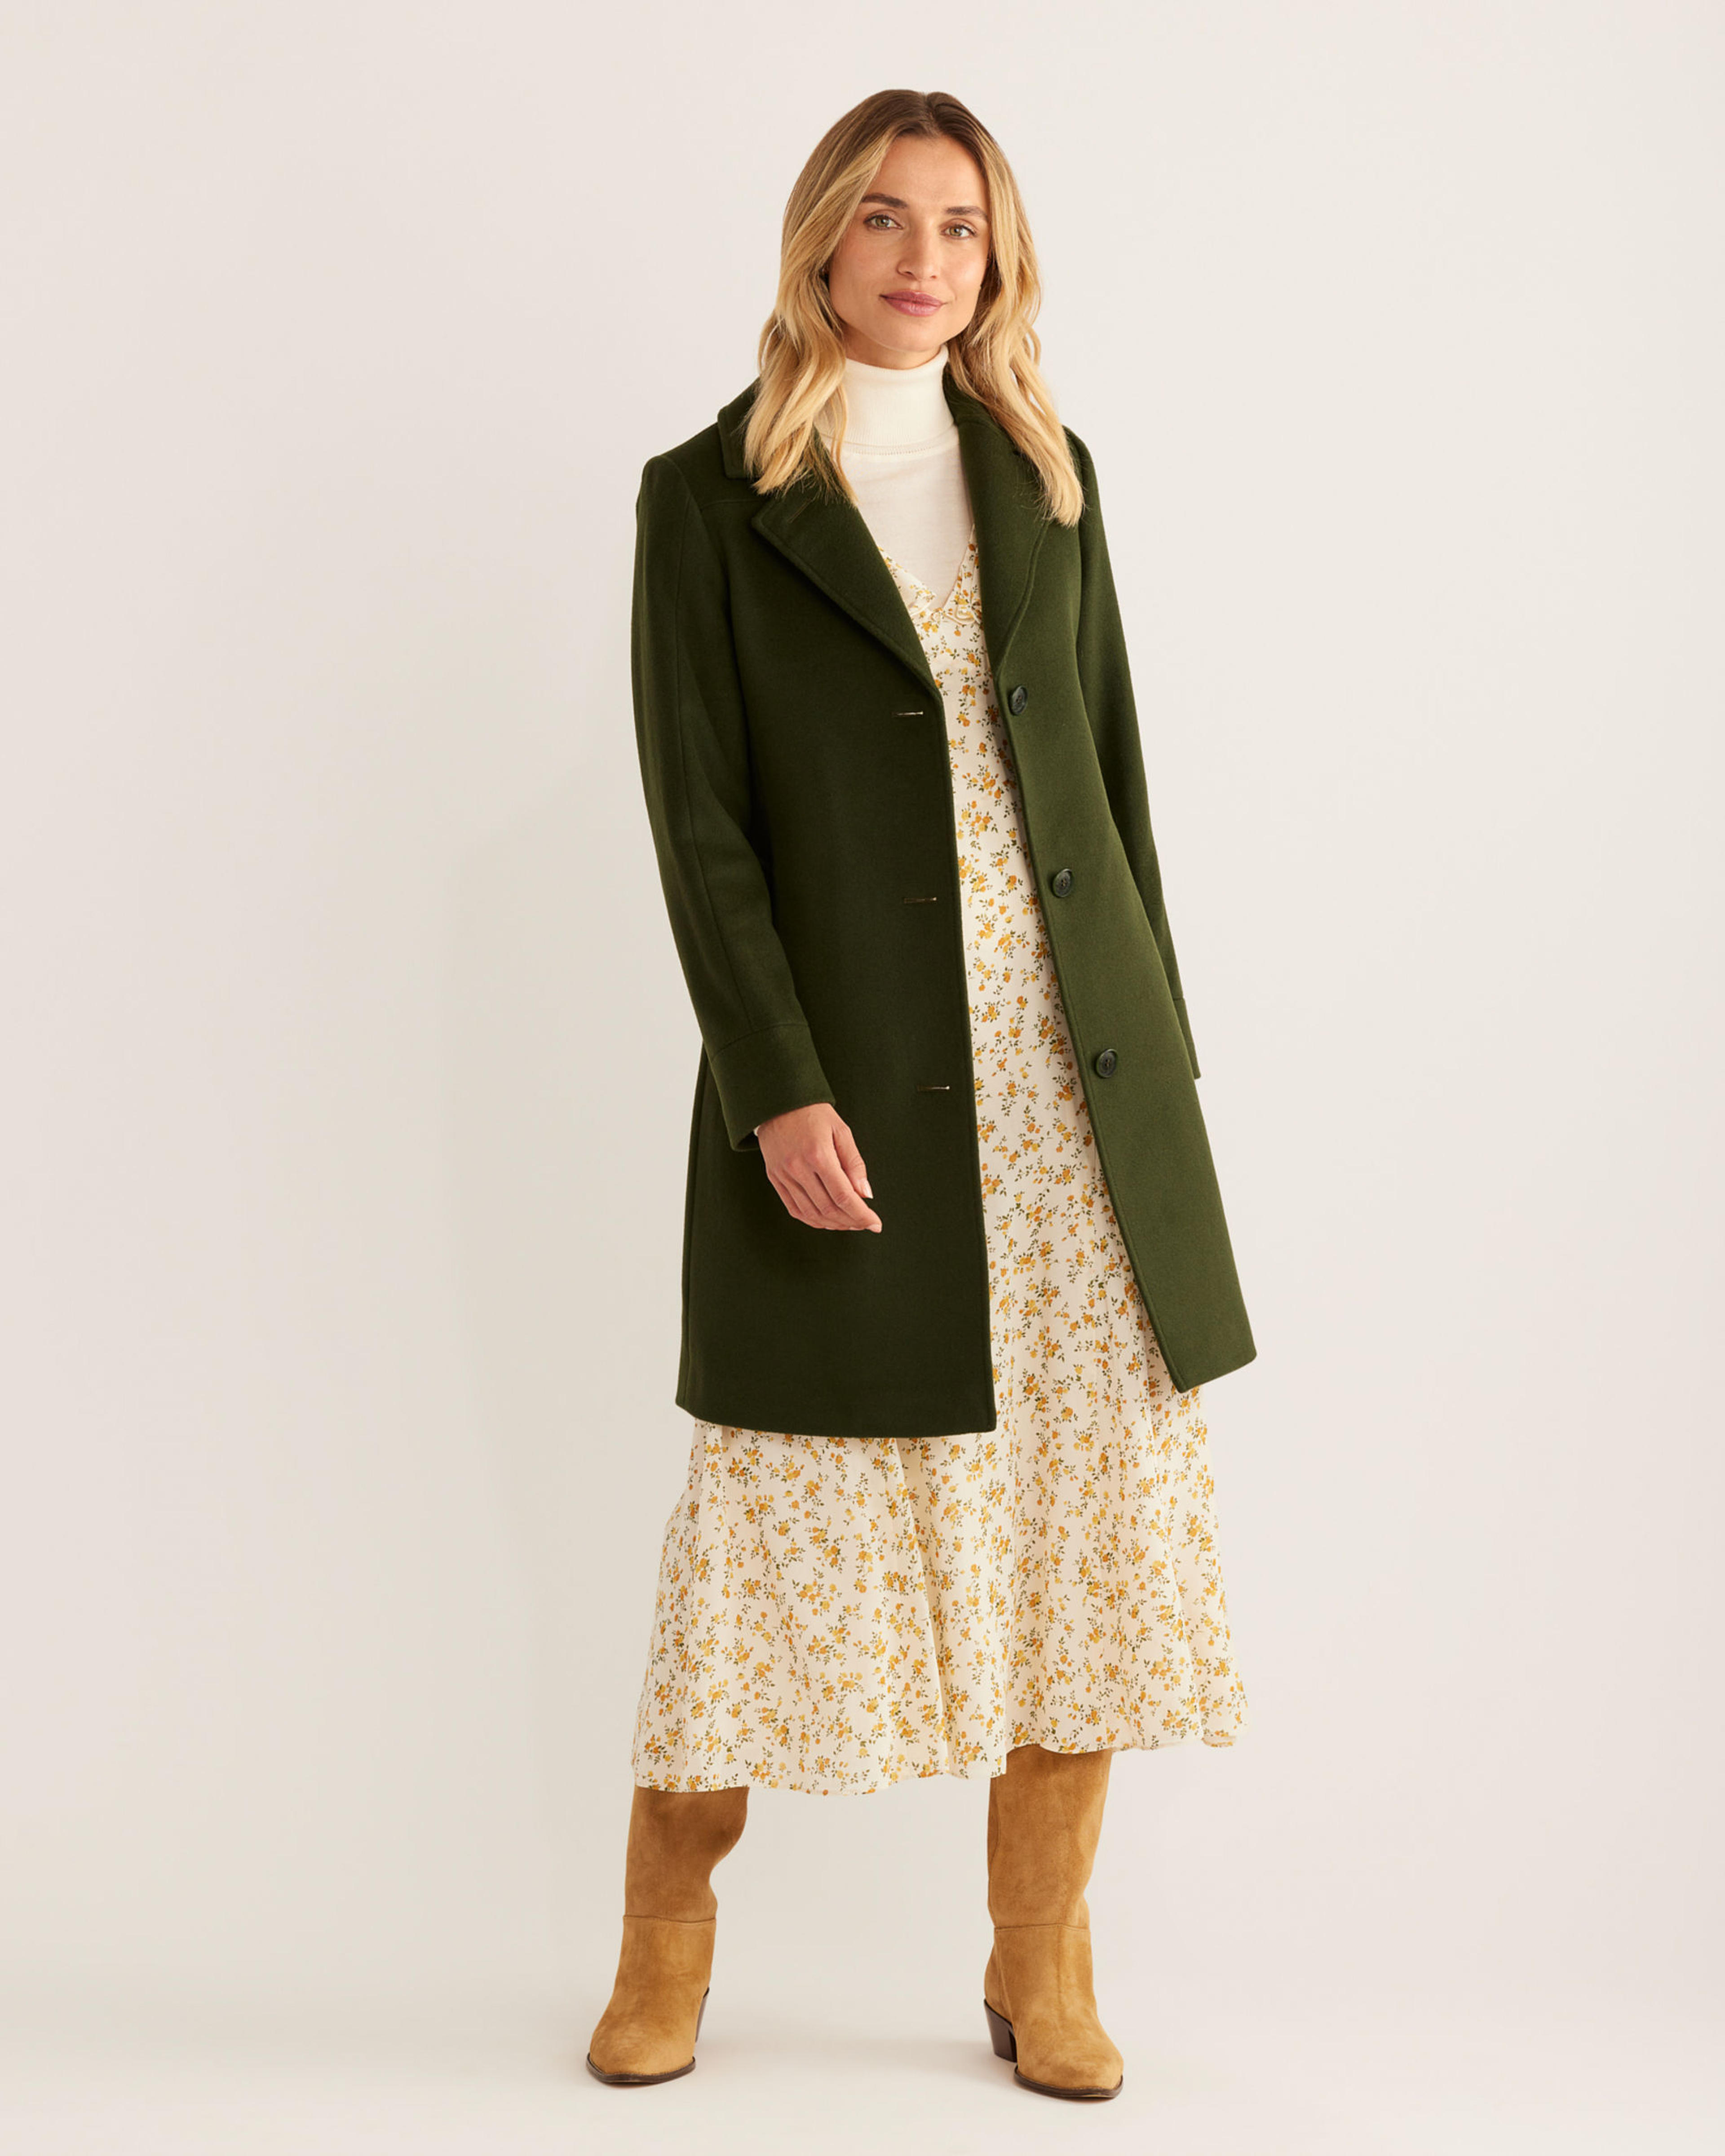 Stay Warm & Stylish in the Women's Walker Wool Coat | Pendleton